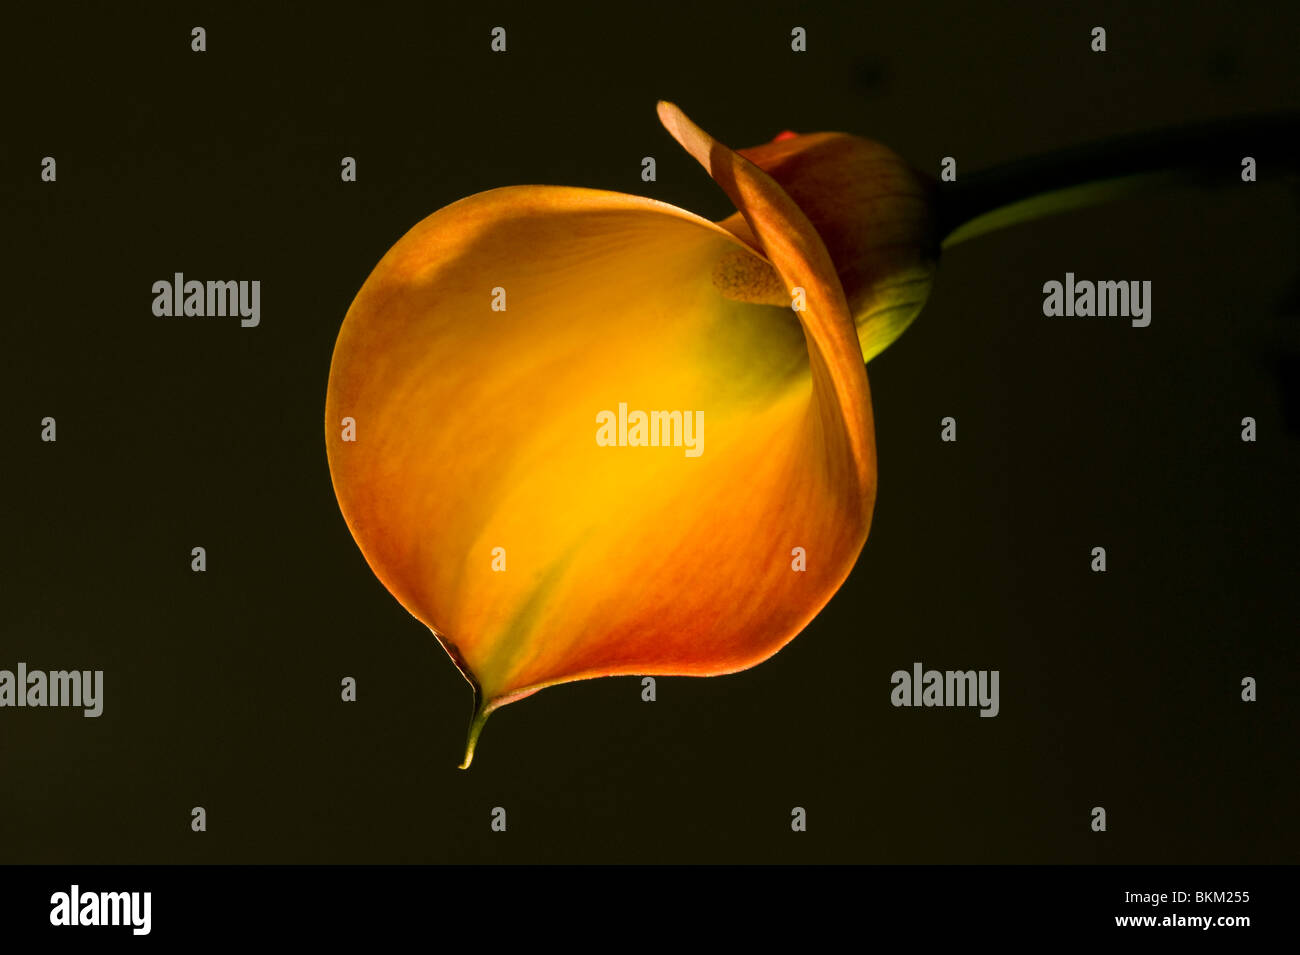 Orange arum o calla lily Zantedeschia accesa in fibra ottica Foto Stock